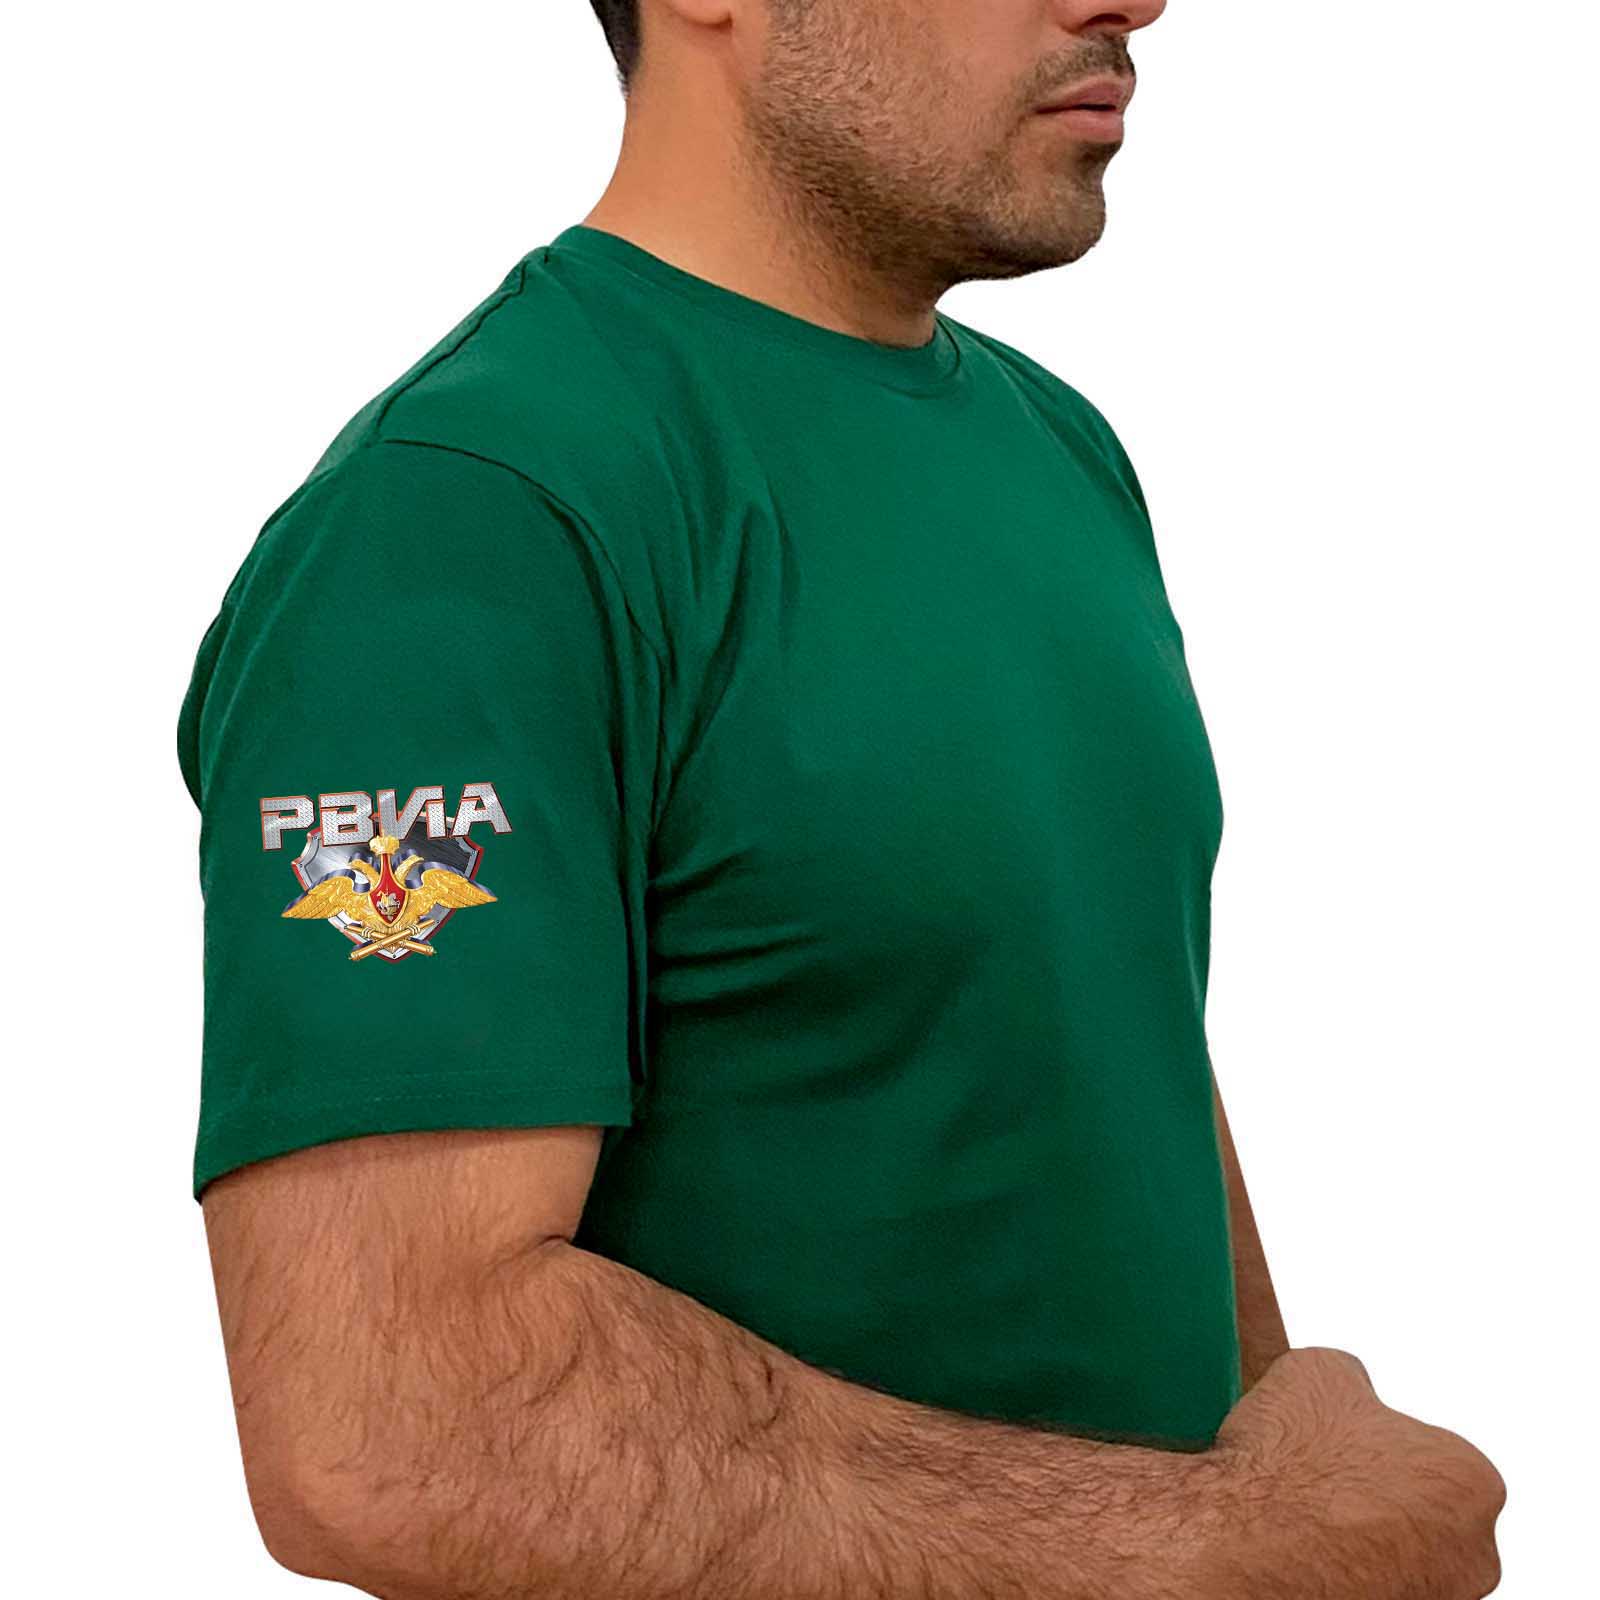 Купить трендовую зеленую футболку с термотрансфером РВиА с доставкой